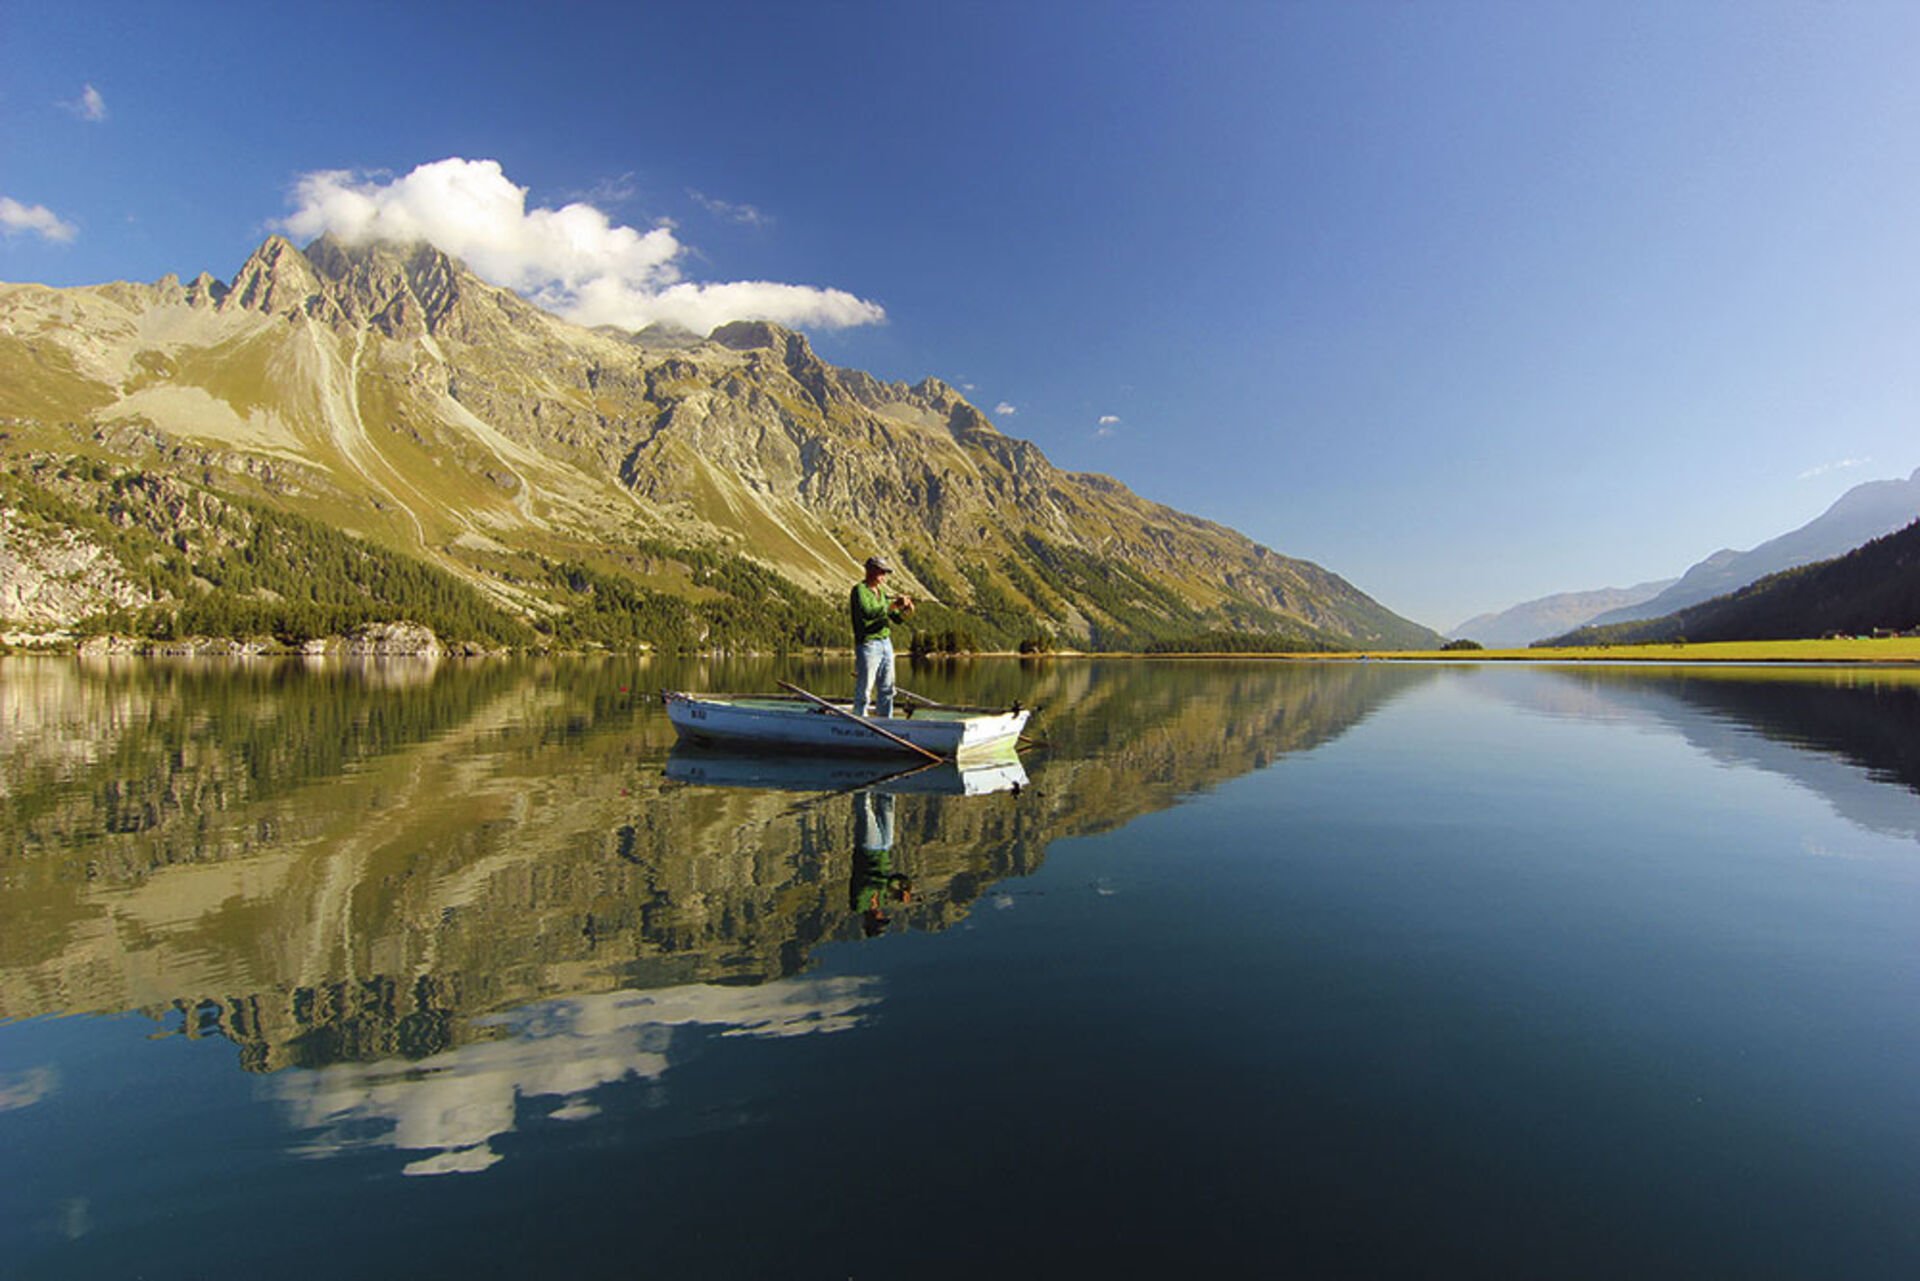  Die Suche nach dem Seesaibling führt einen an herrliche Gewässer. Der Silsersee im Oberengadin ist ein bekanntes Beispiel.  